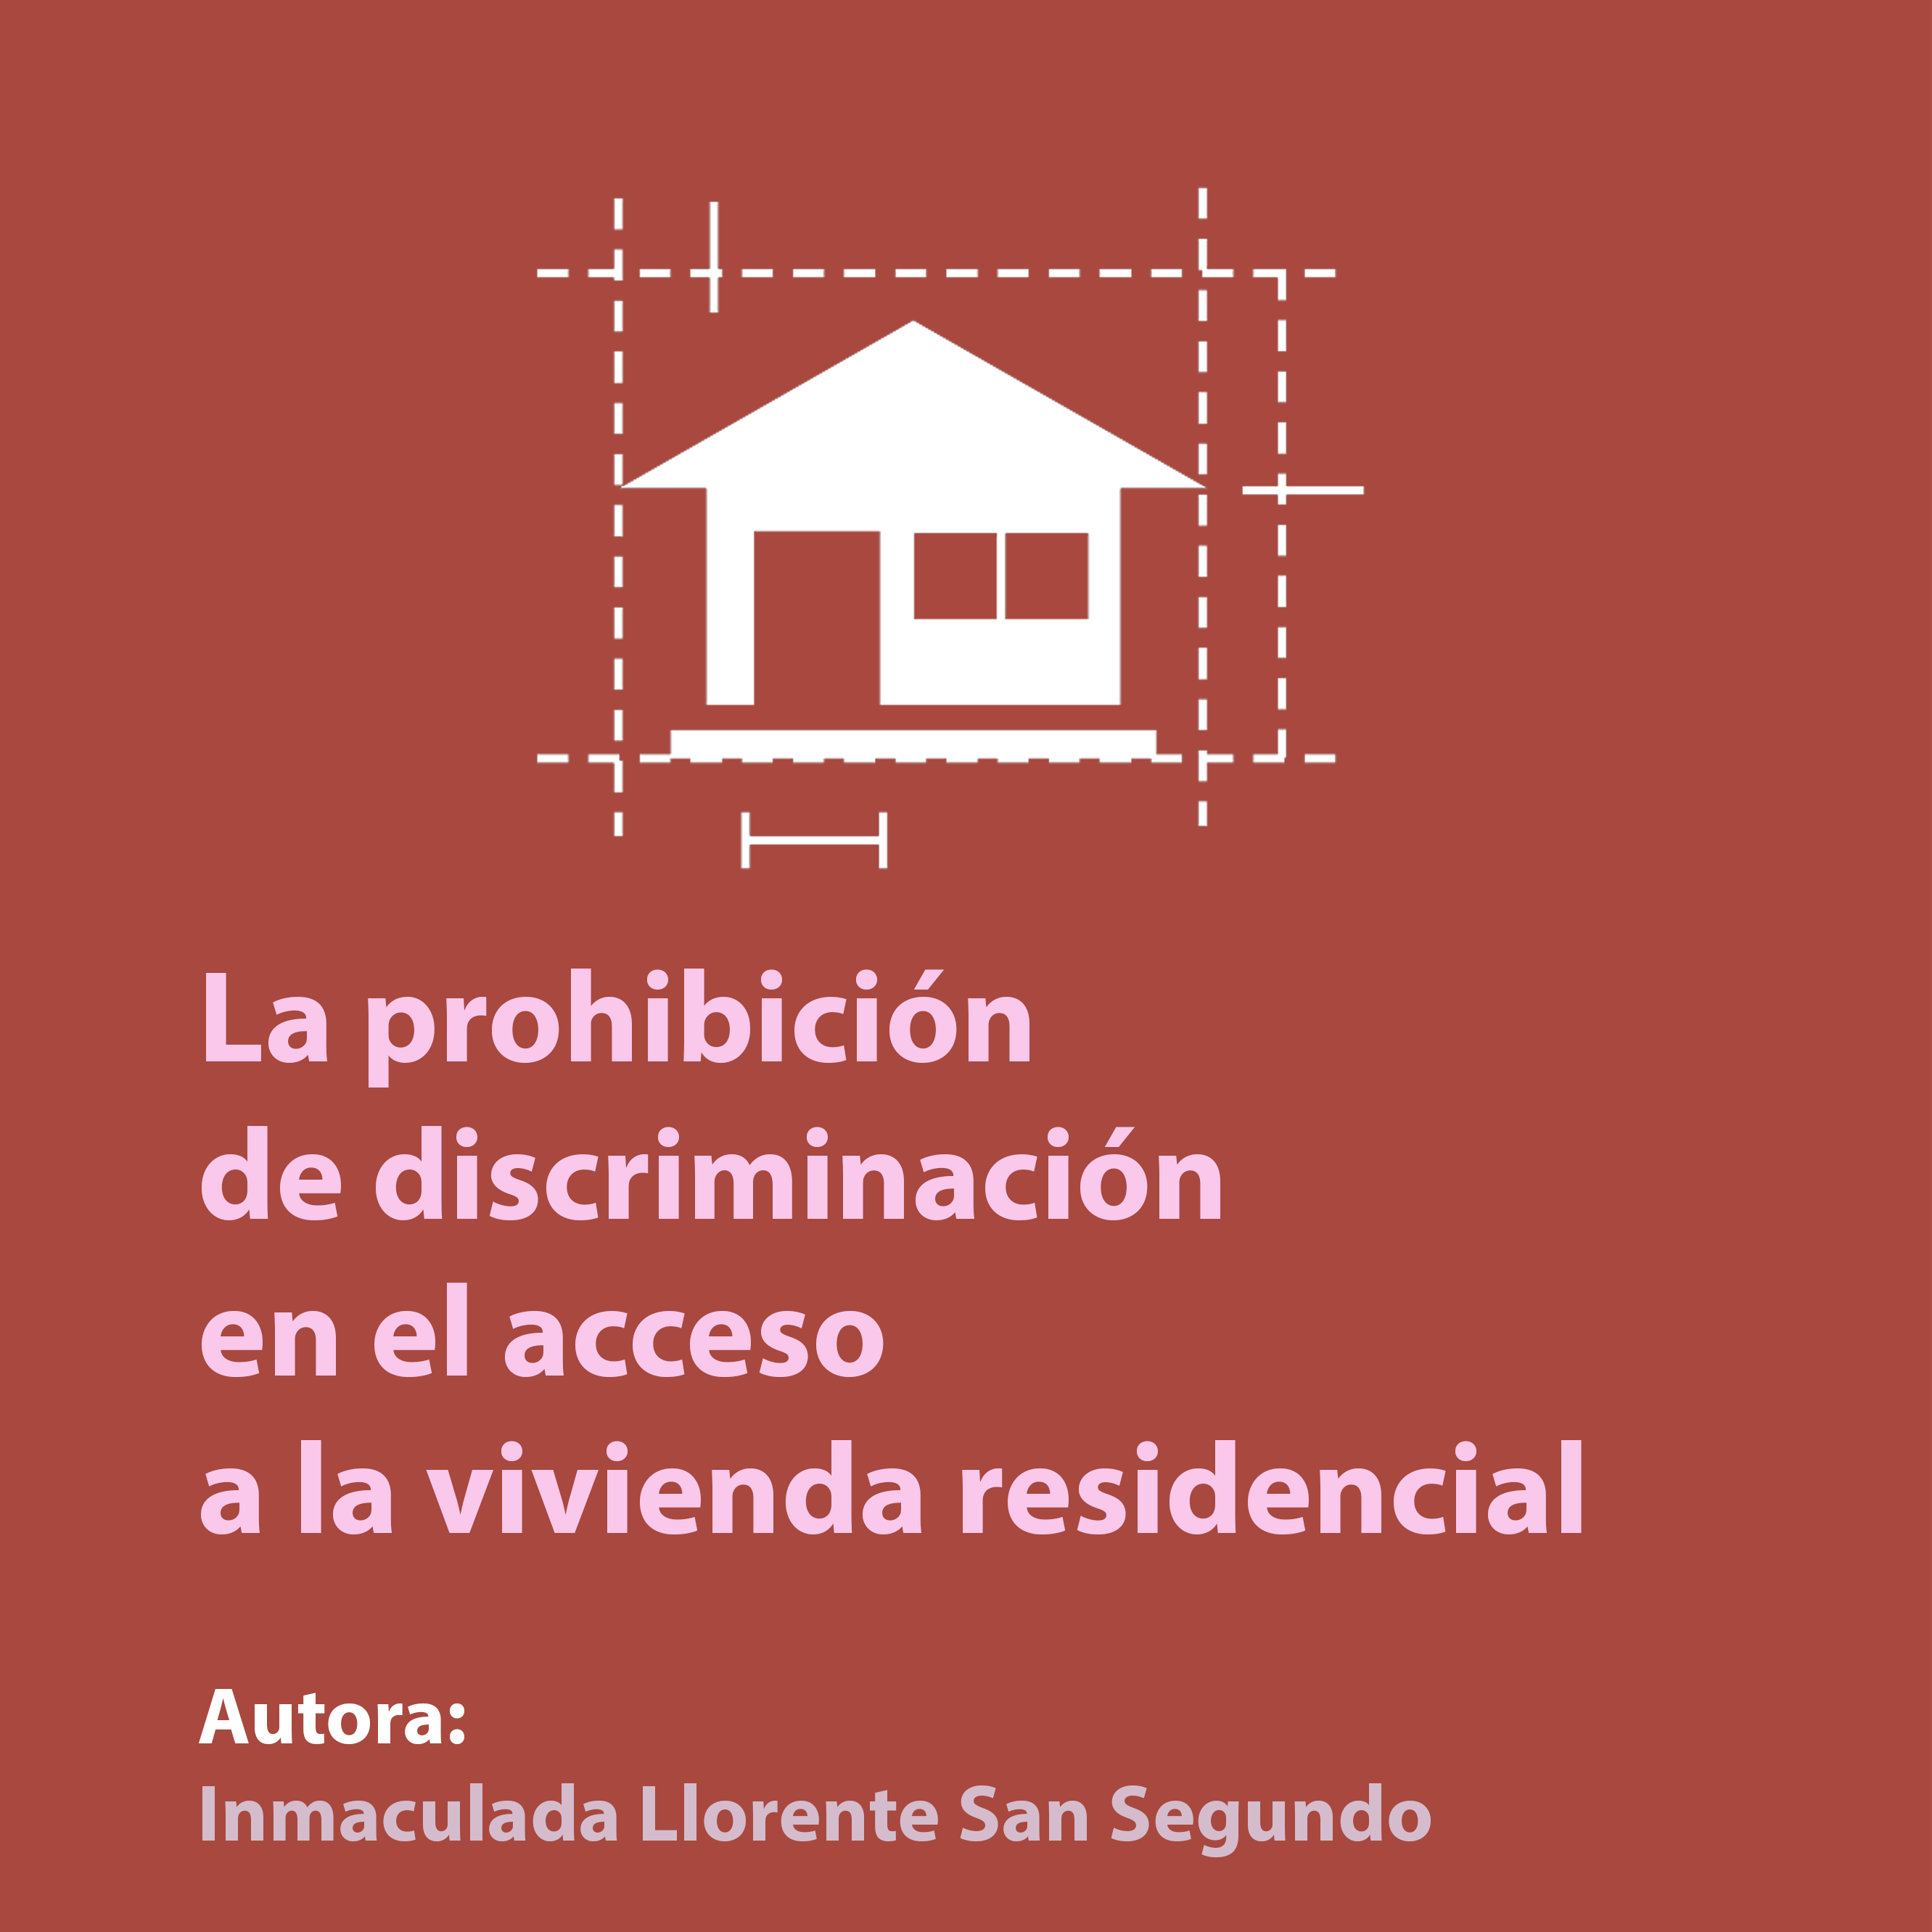 La prohibición de discriminación en el acceso a la vivienda residencial